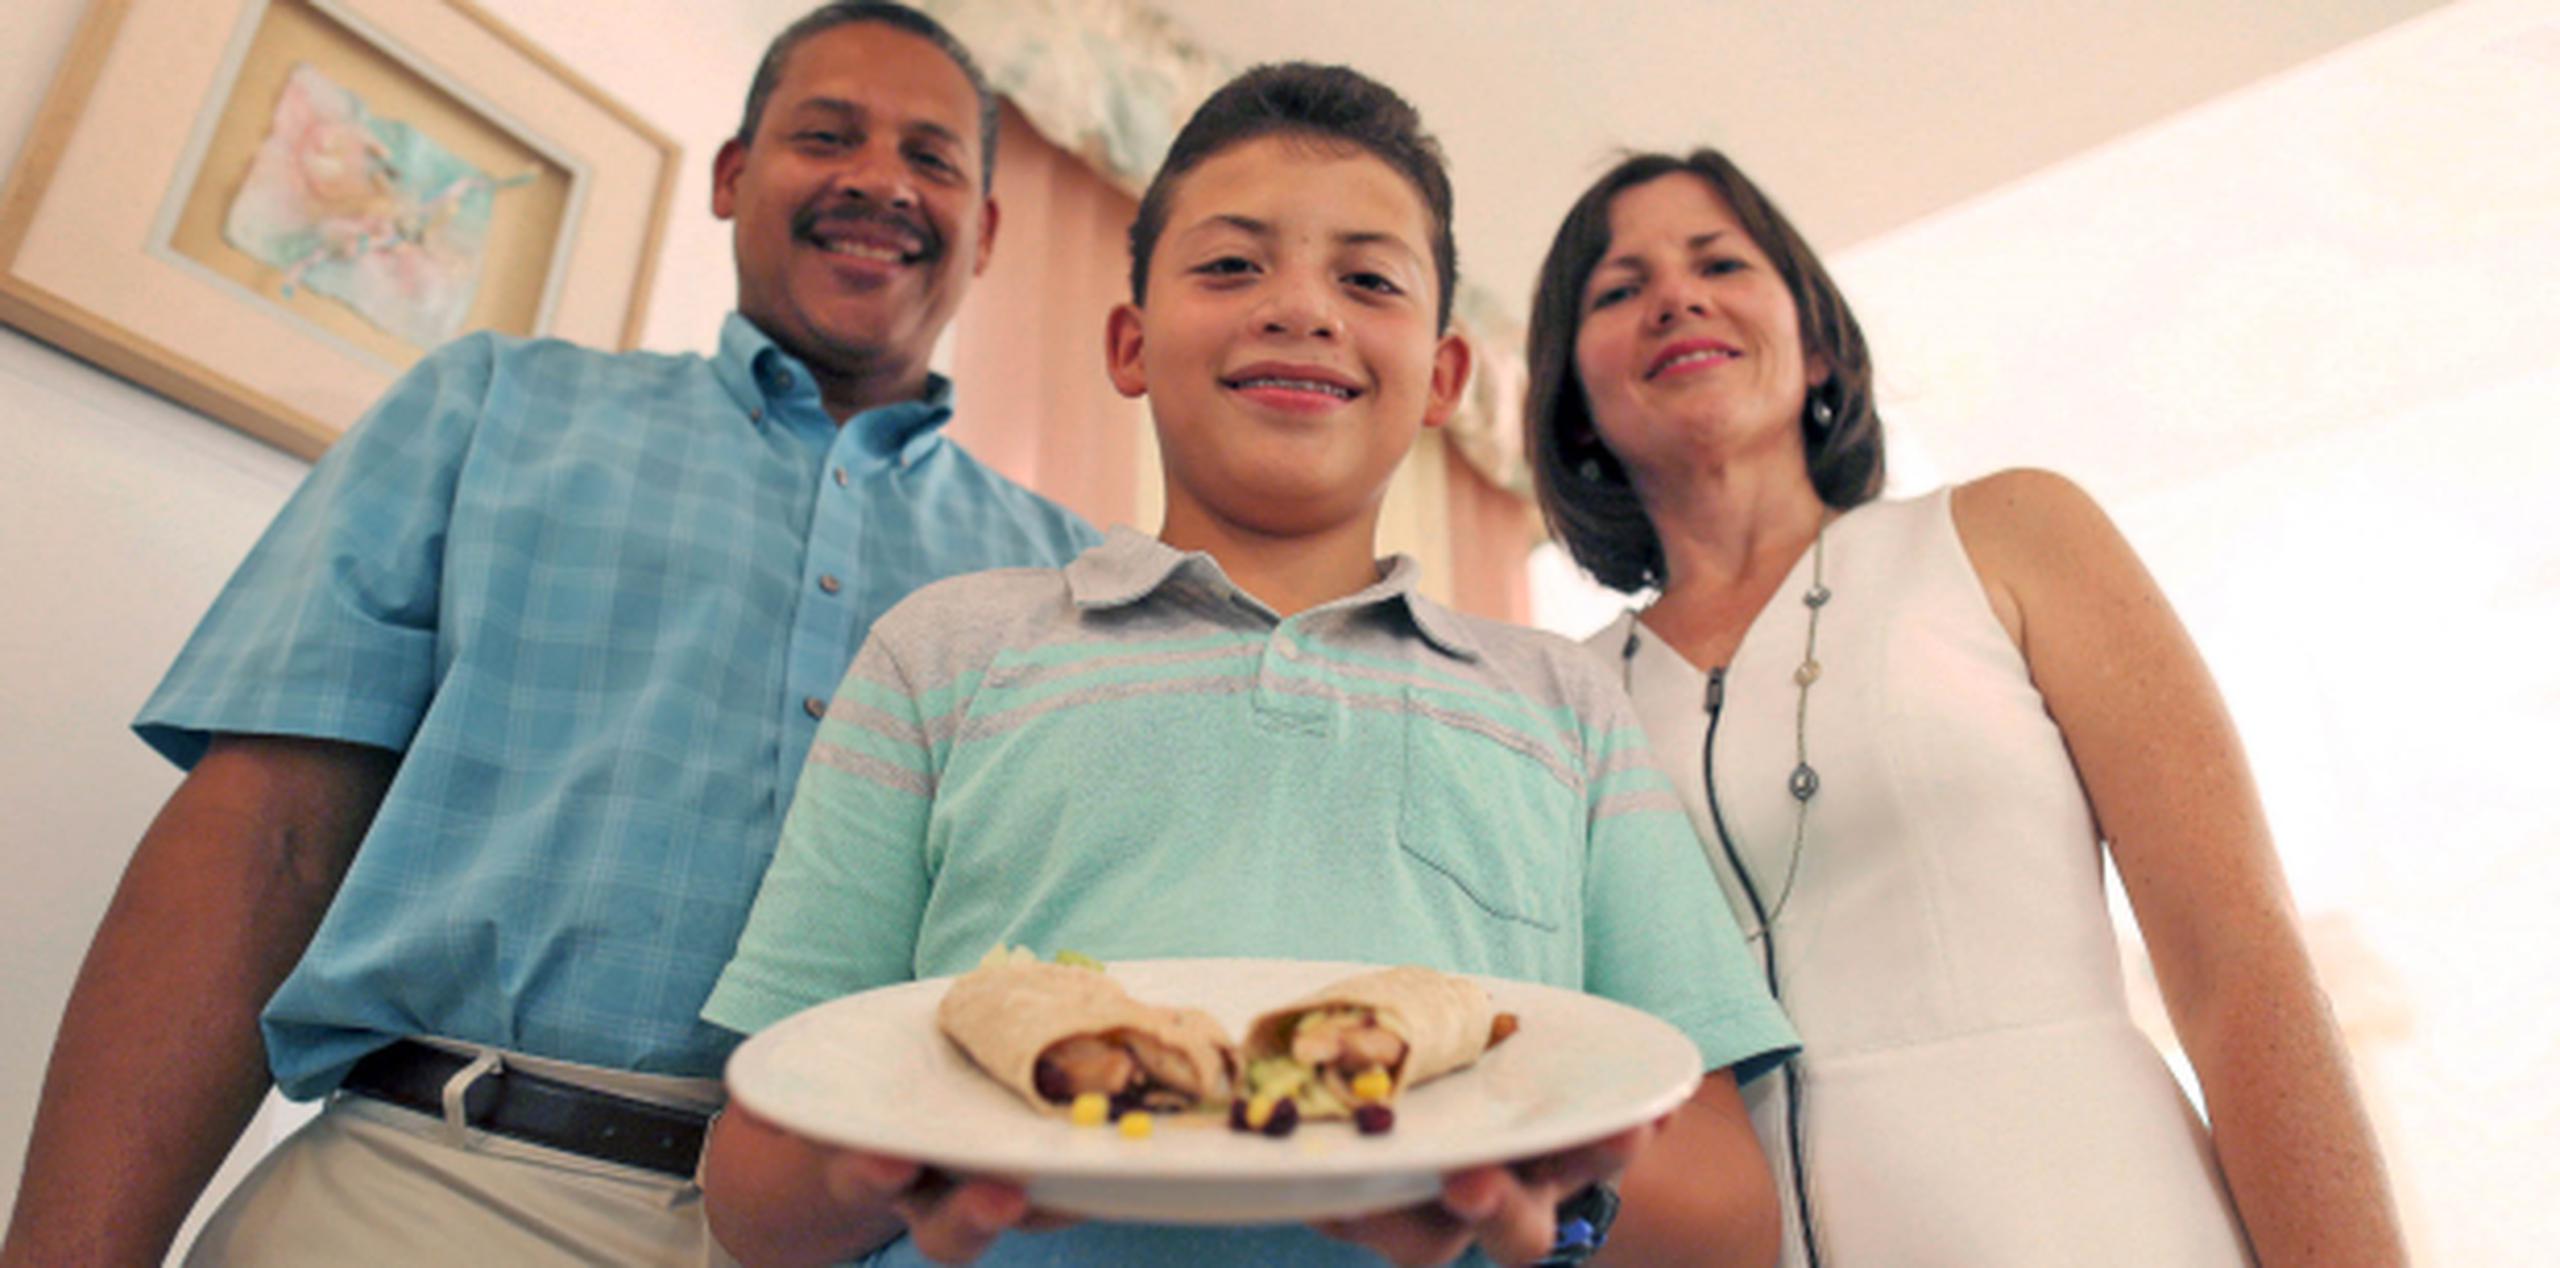 Para Félix González, de 11 años, cocinar es solo un pasatiempo porque su aspiración es convertirse en ingeniero. (david.villafane@gfrmedia.com)